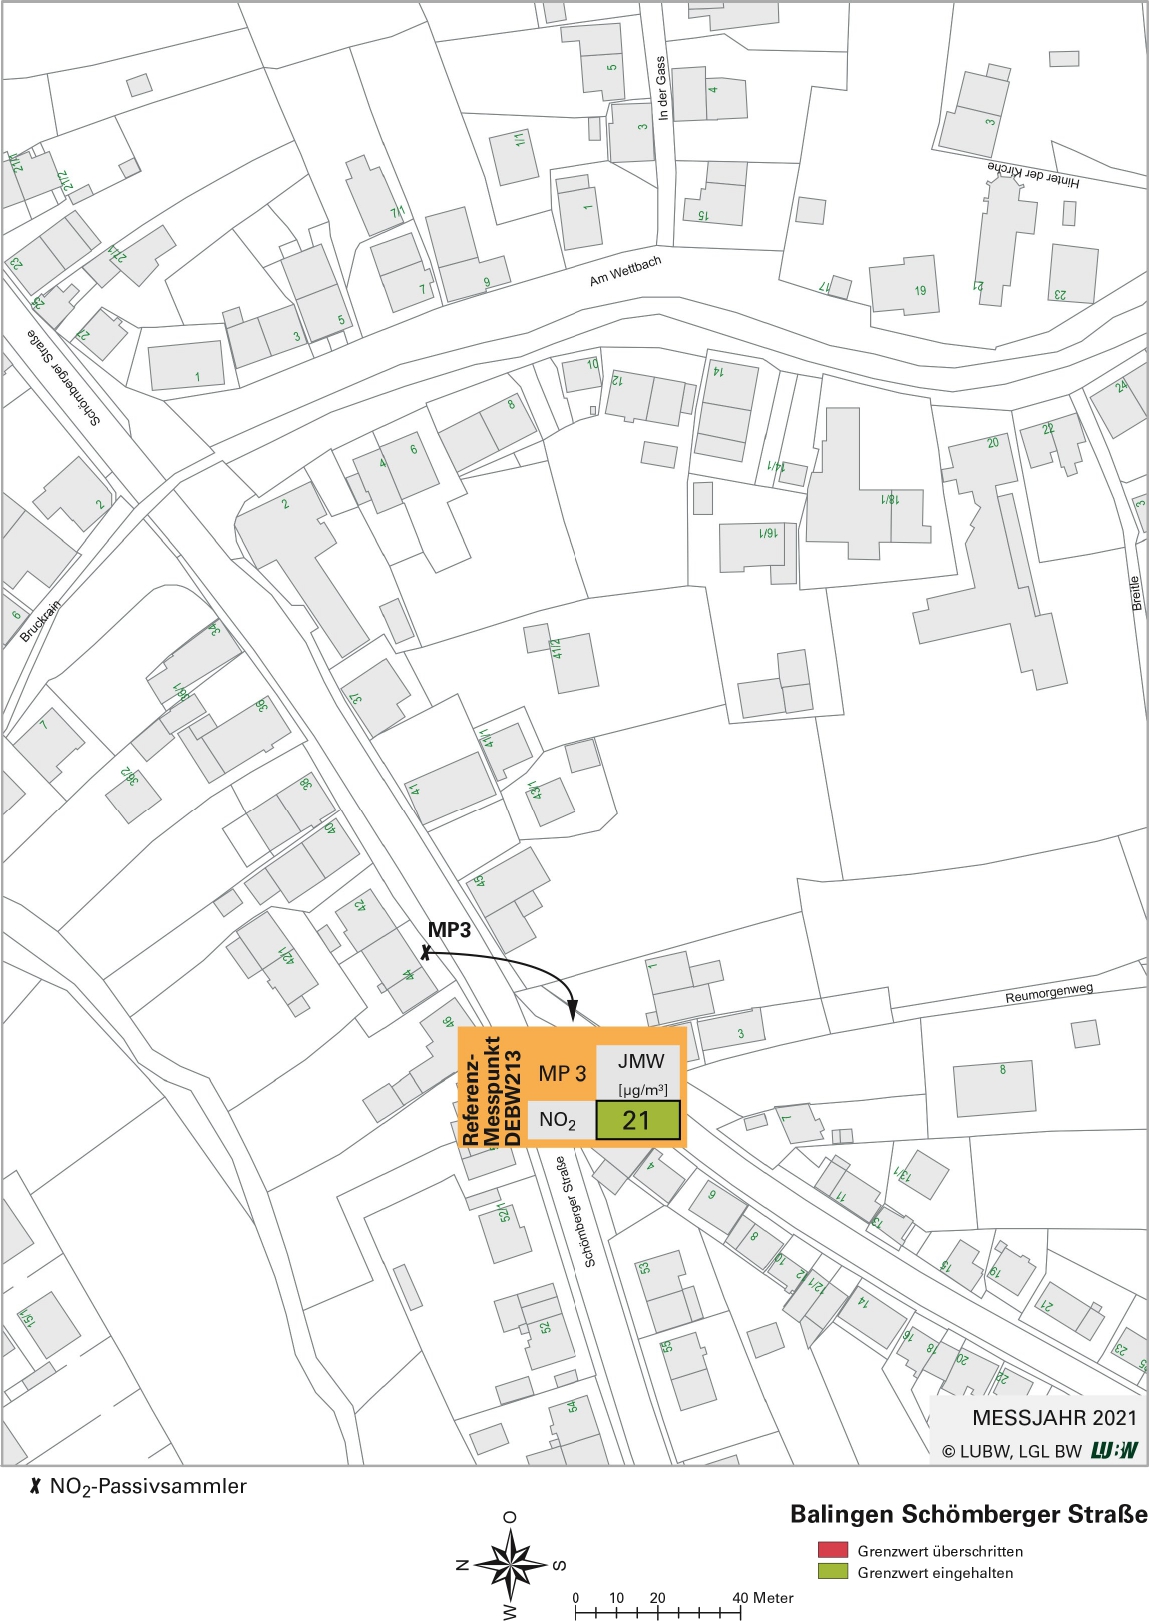 Kartenausschnitt, der die Lage der Messstelle Balingen Schömberger Straße (Referenzmesspunkt) zeigt. Dargestellt ist zudem das Ergebnis (Jahresmittelwert 2021) der gemessenen Stickstoffdioxidbelastung.